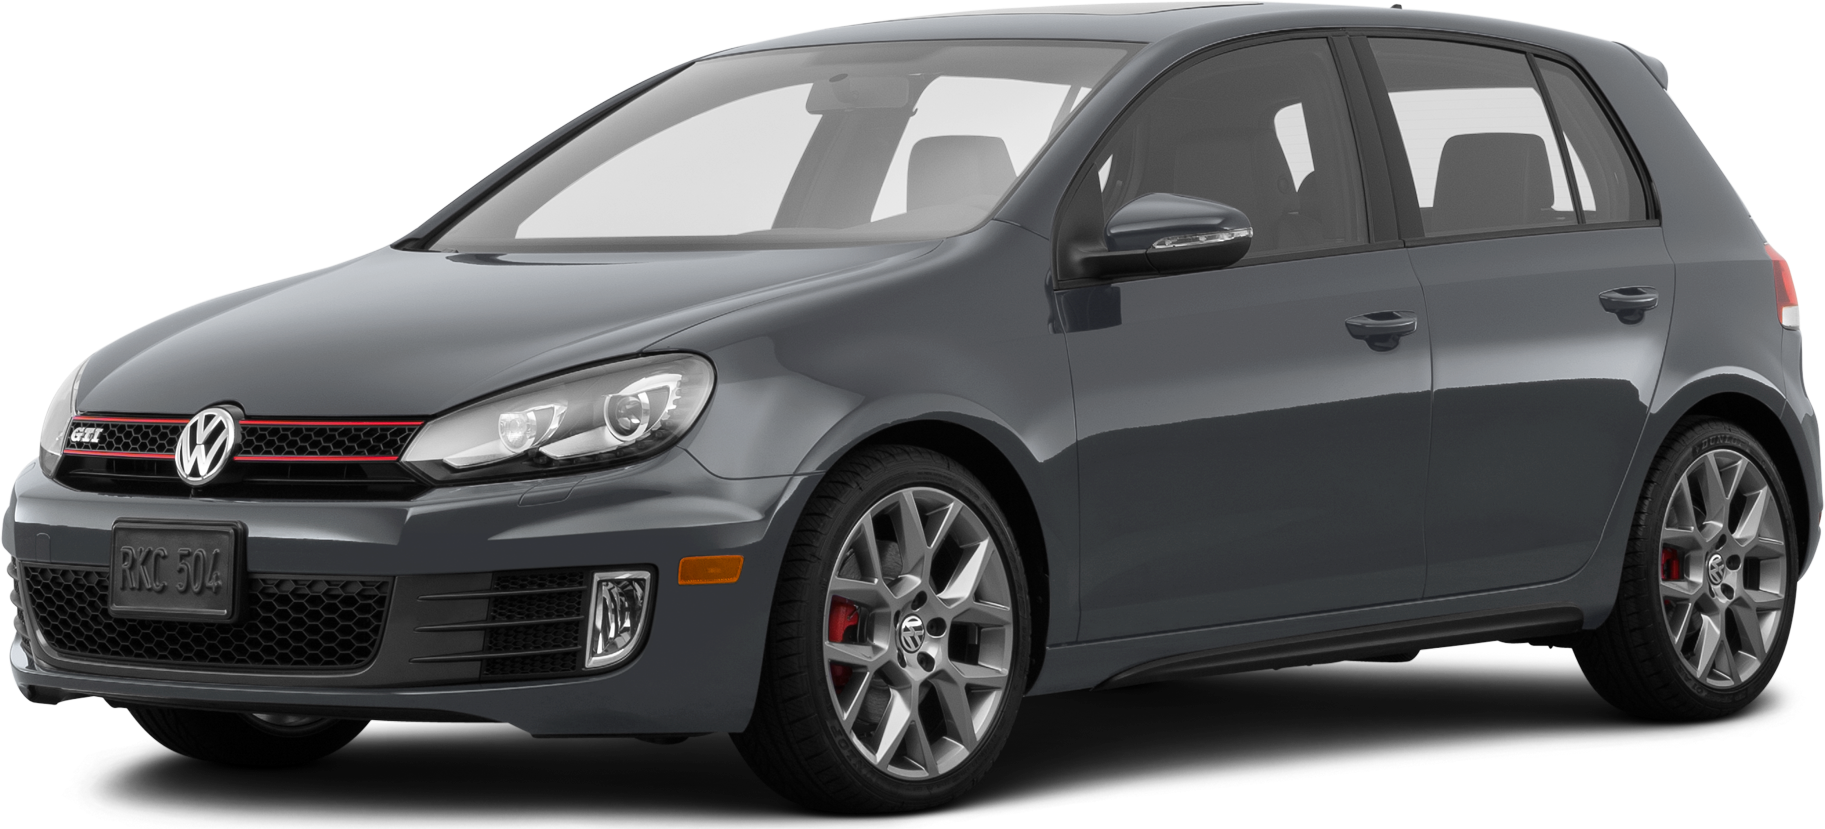 2014 Volkswagen GTI Price, Value, Ratings & Reviews